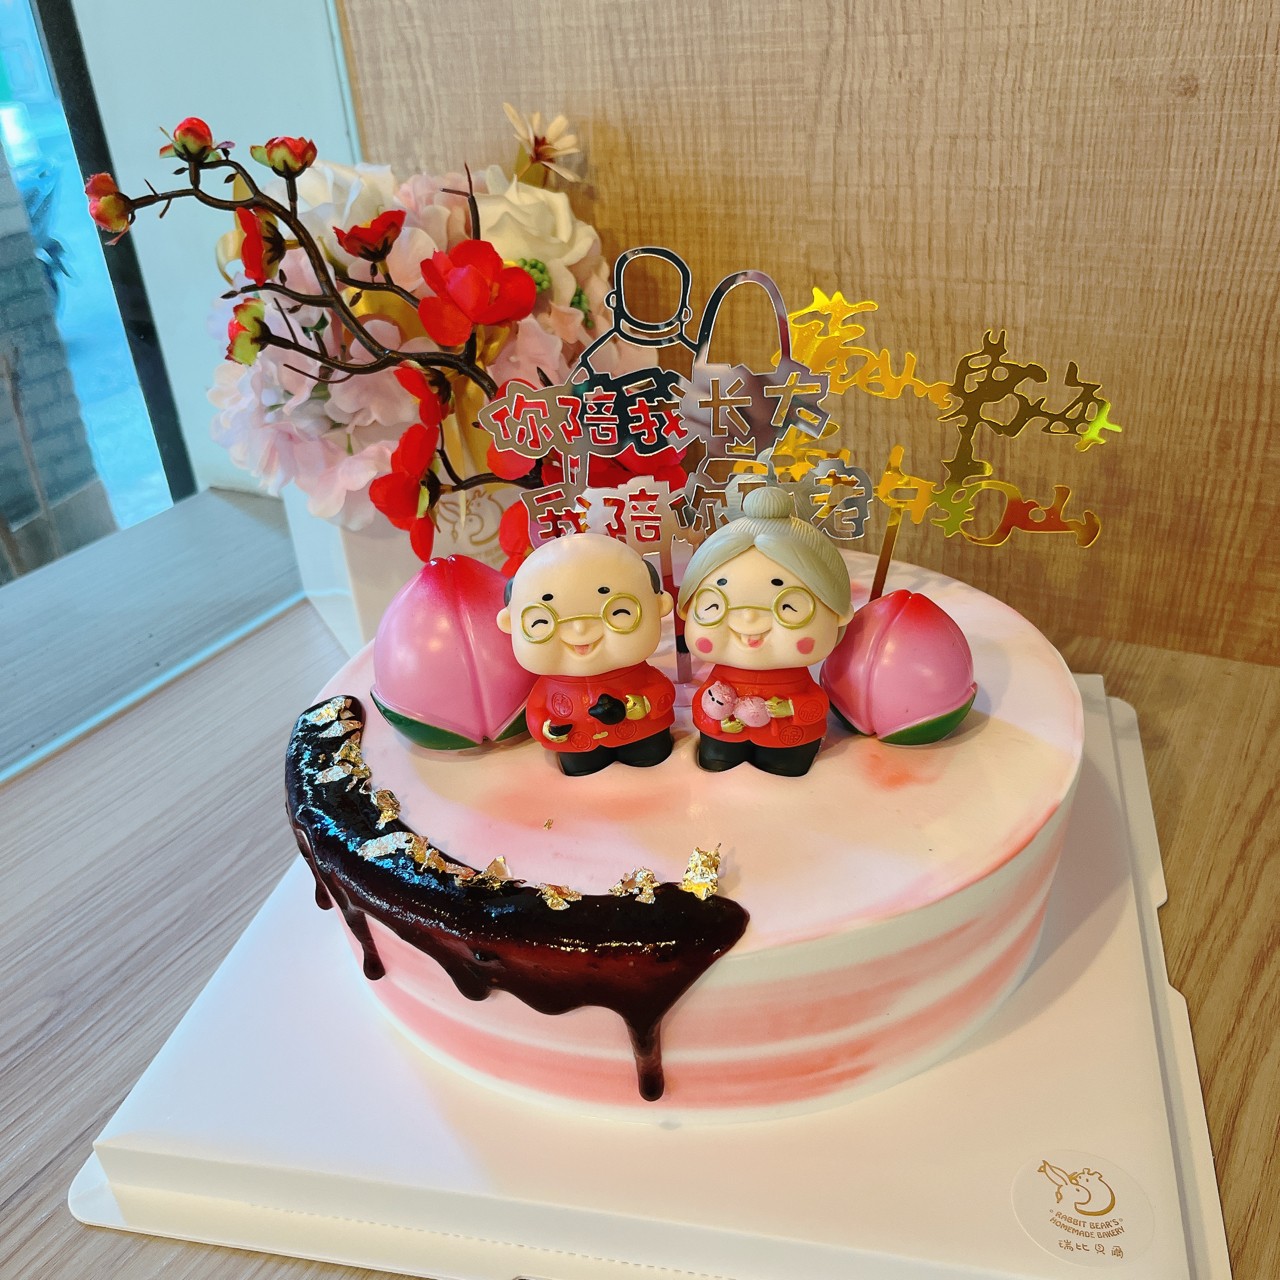 新款铁艺生日蛋糕架子 多层婚礼婚庆过寿蛋糕架子模型展示支架-阿里巴巴